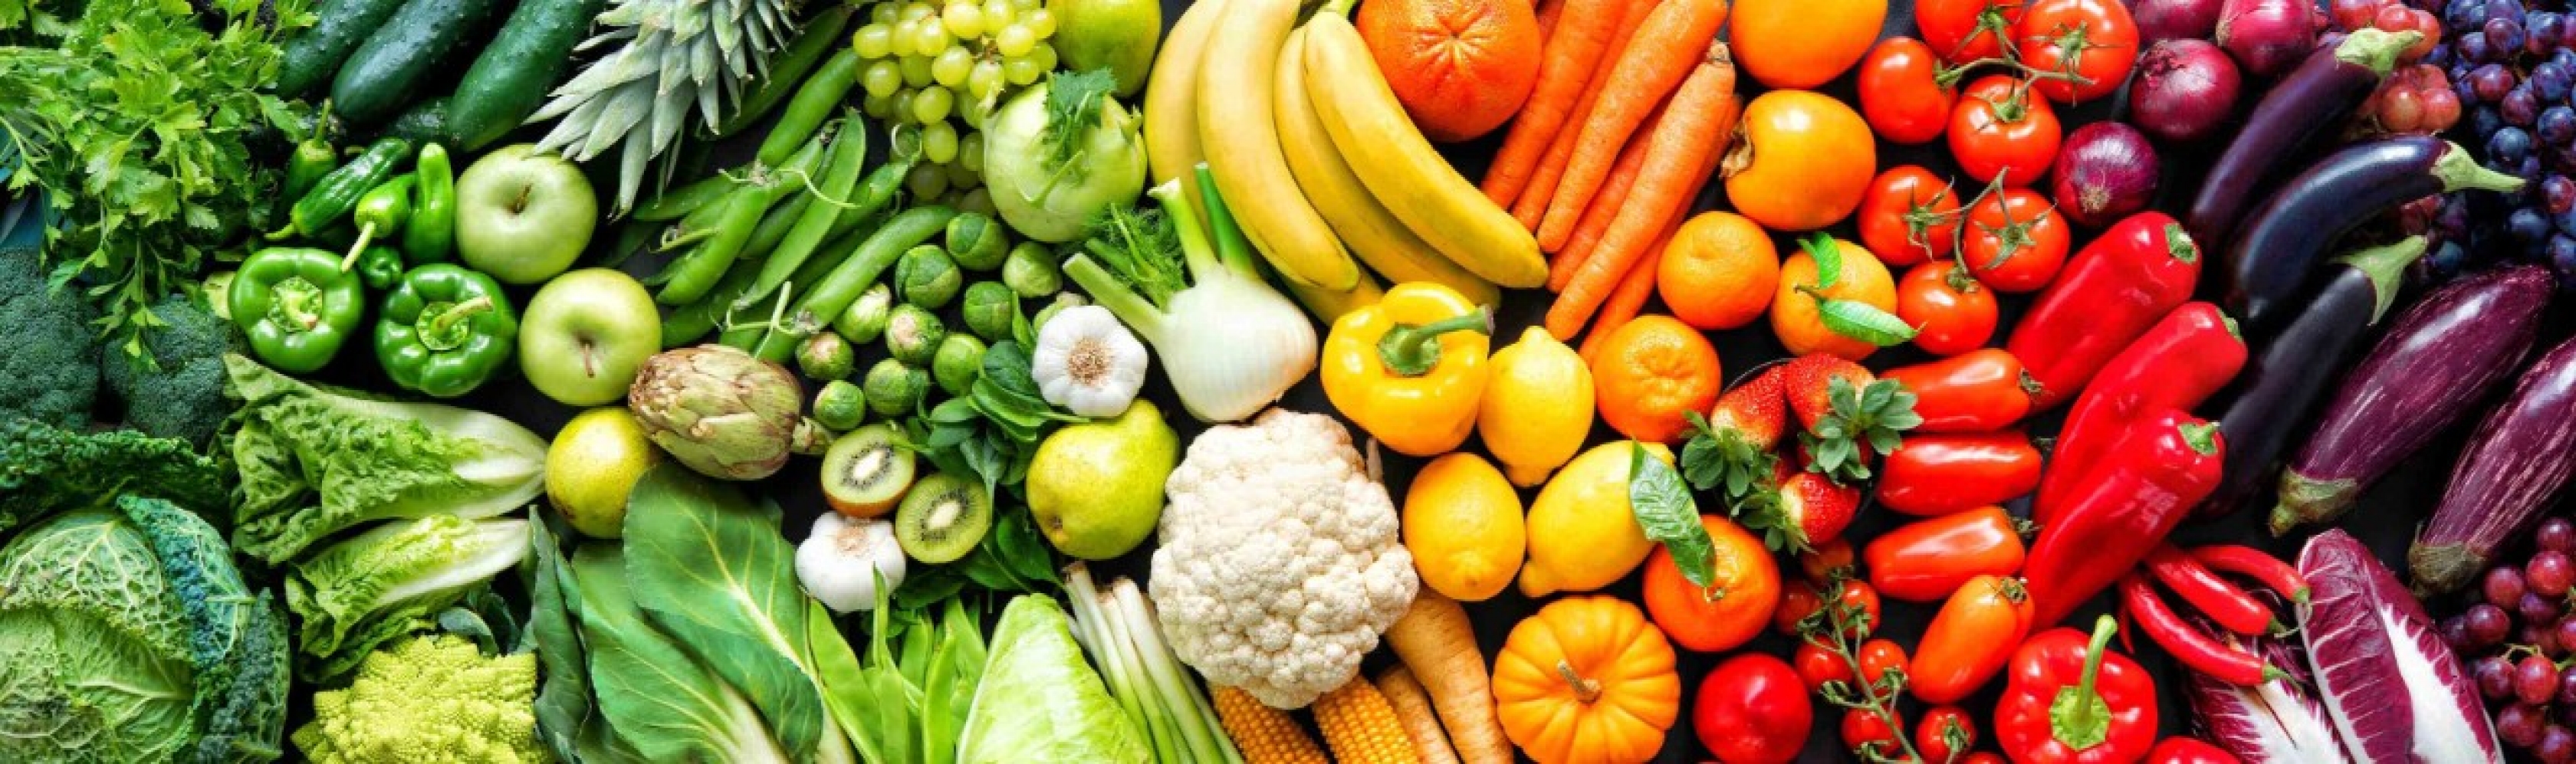 Gesünder leben? Zum gesunden Lebensstil gehört eine gesunde Ernährung. Dieses farbenfrohe und vielfältige Angebot an Obst und Gemüse, macht Appetit.